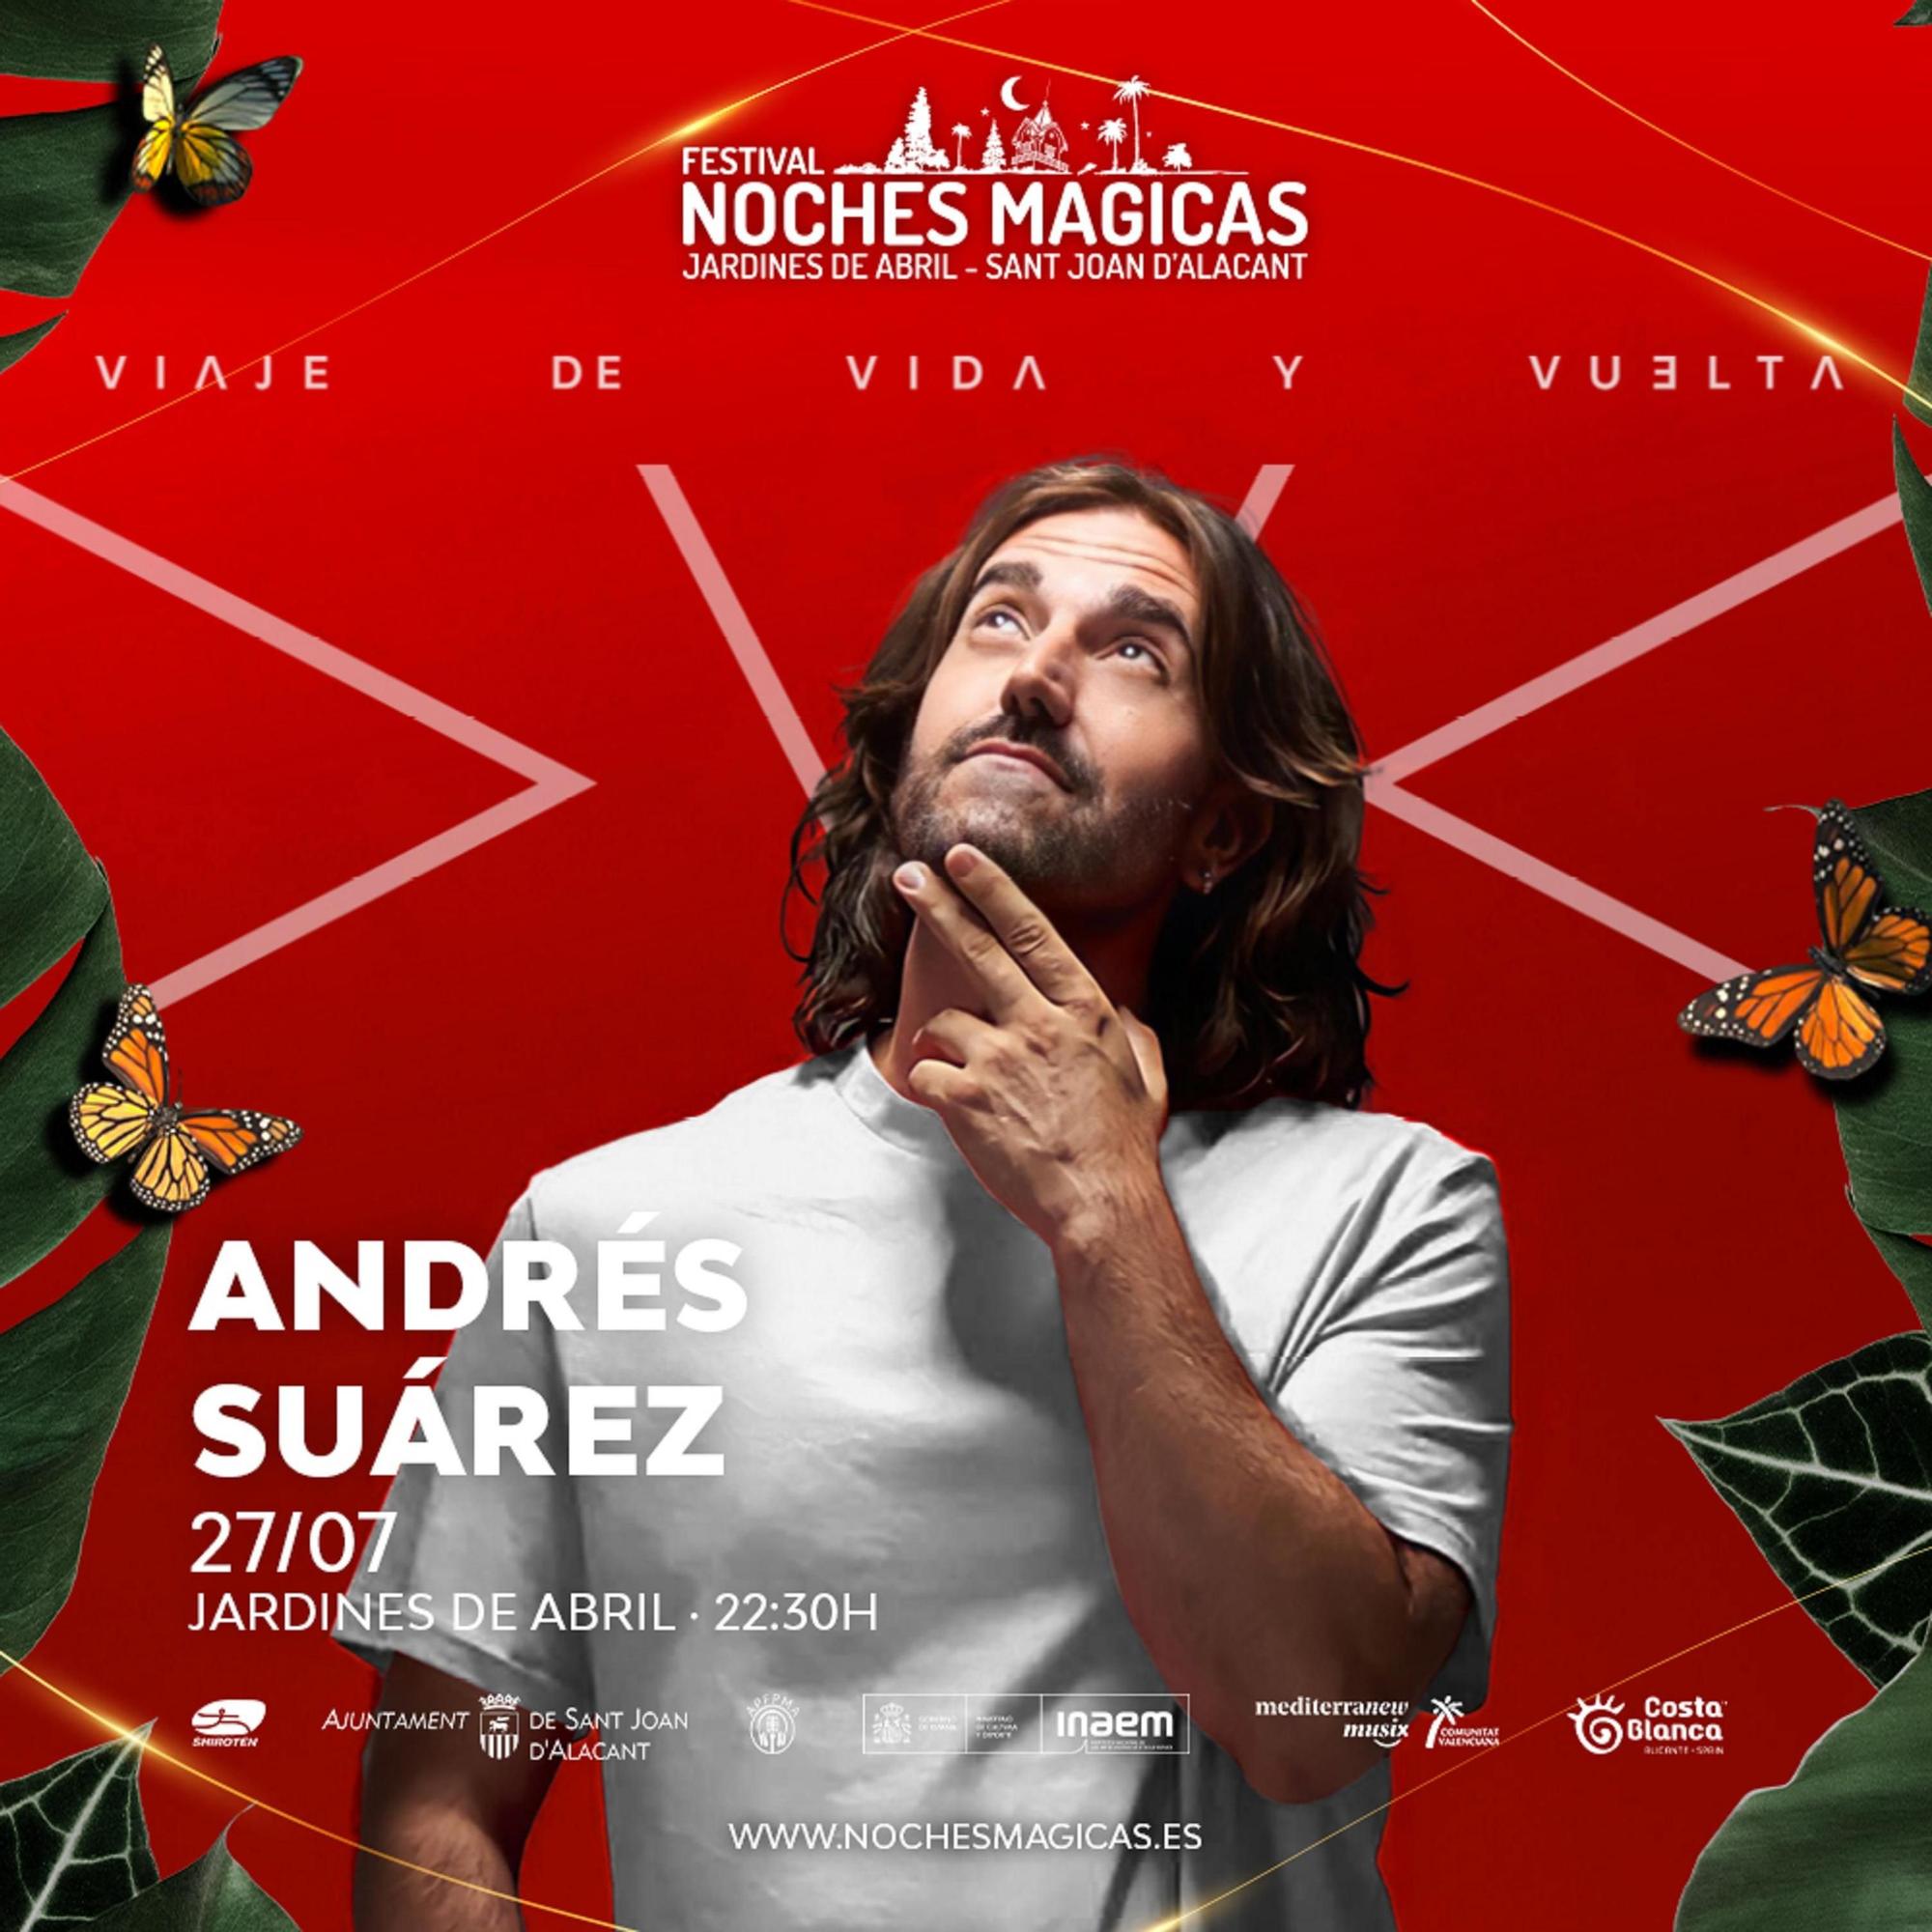 Andrés Suárez acaba de regresar de su exitosa gira por Latinoamérica y su primera parada en la península será en Noches Mágicas .